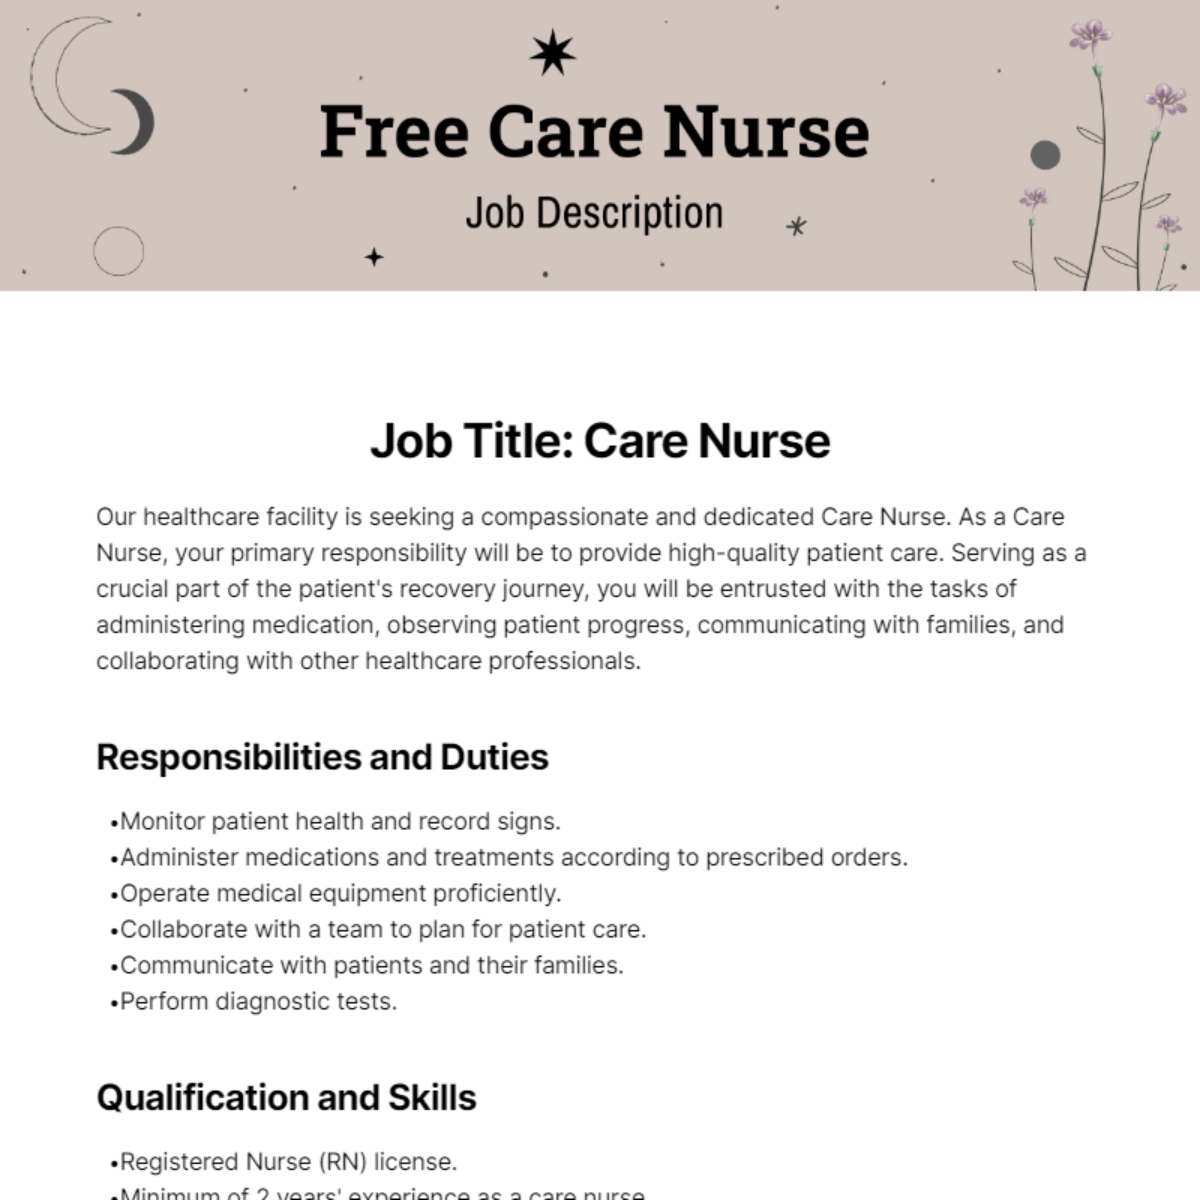 Free Care Nurse Job Description Template